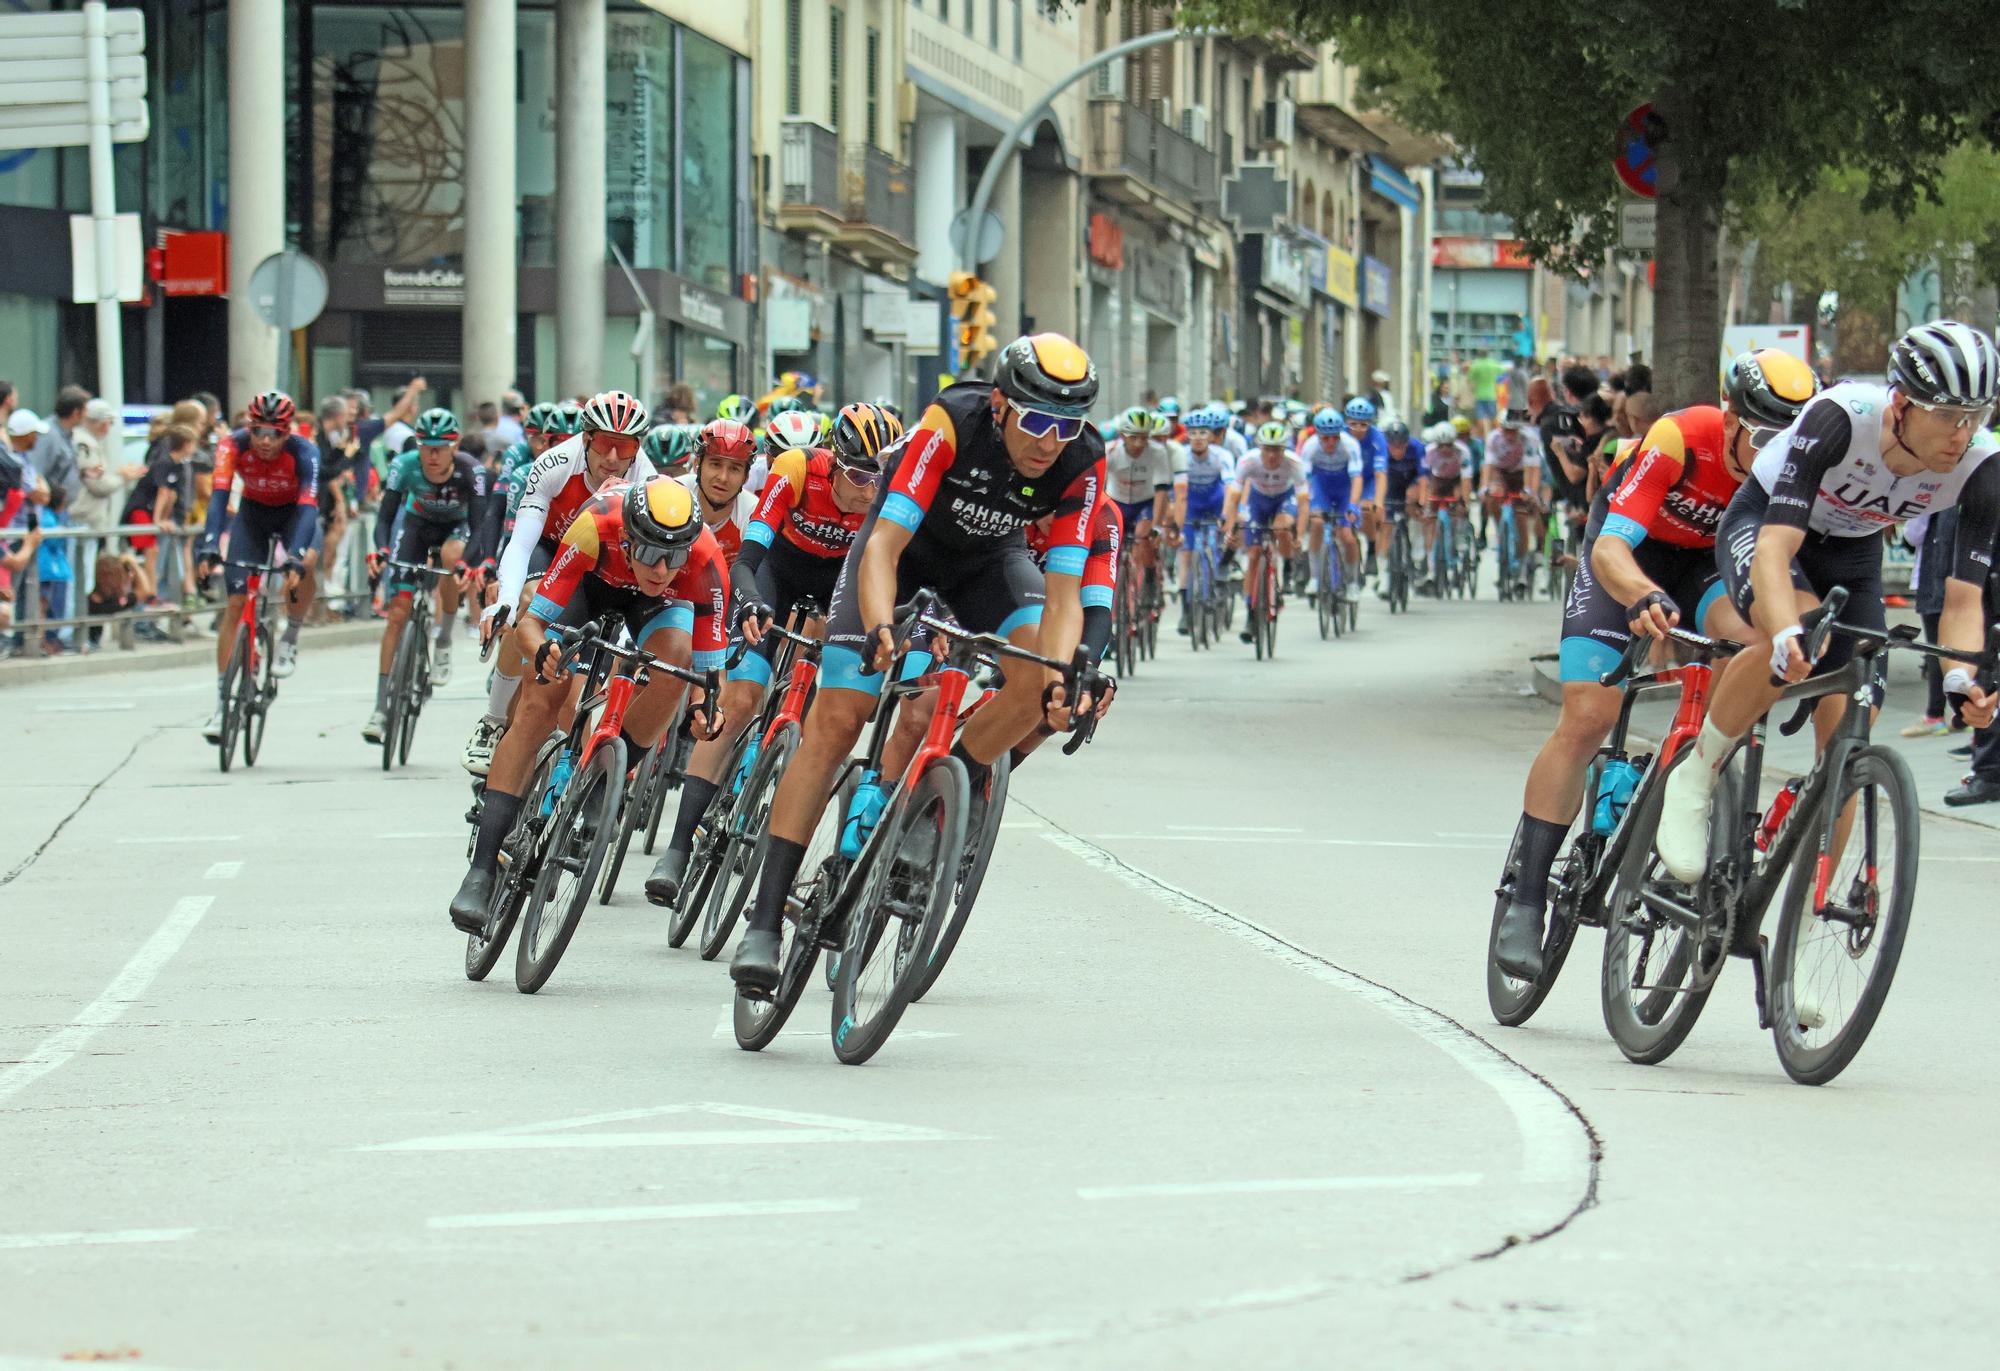 La Vuelta, al seu pas per Bages